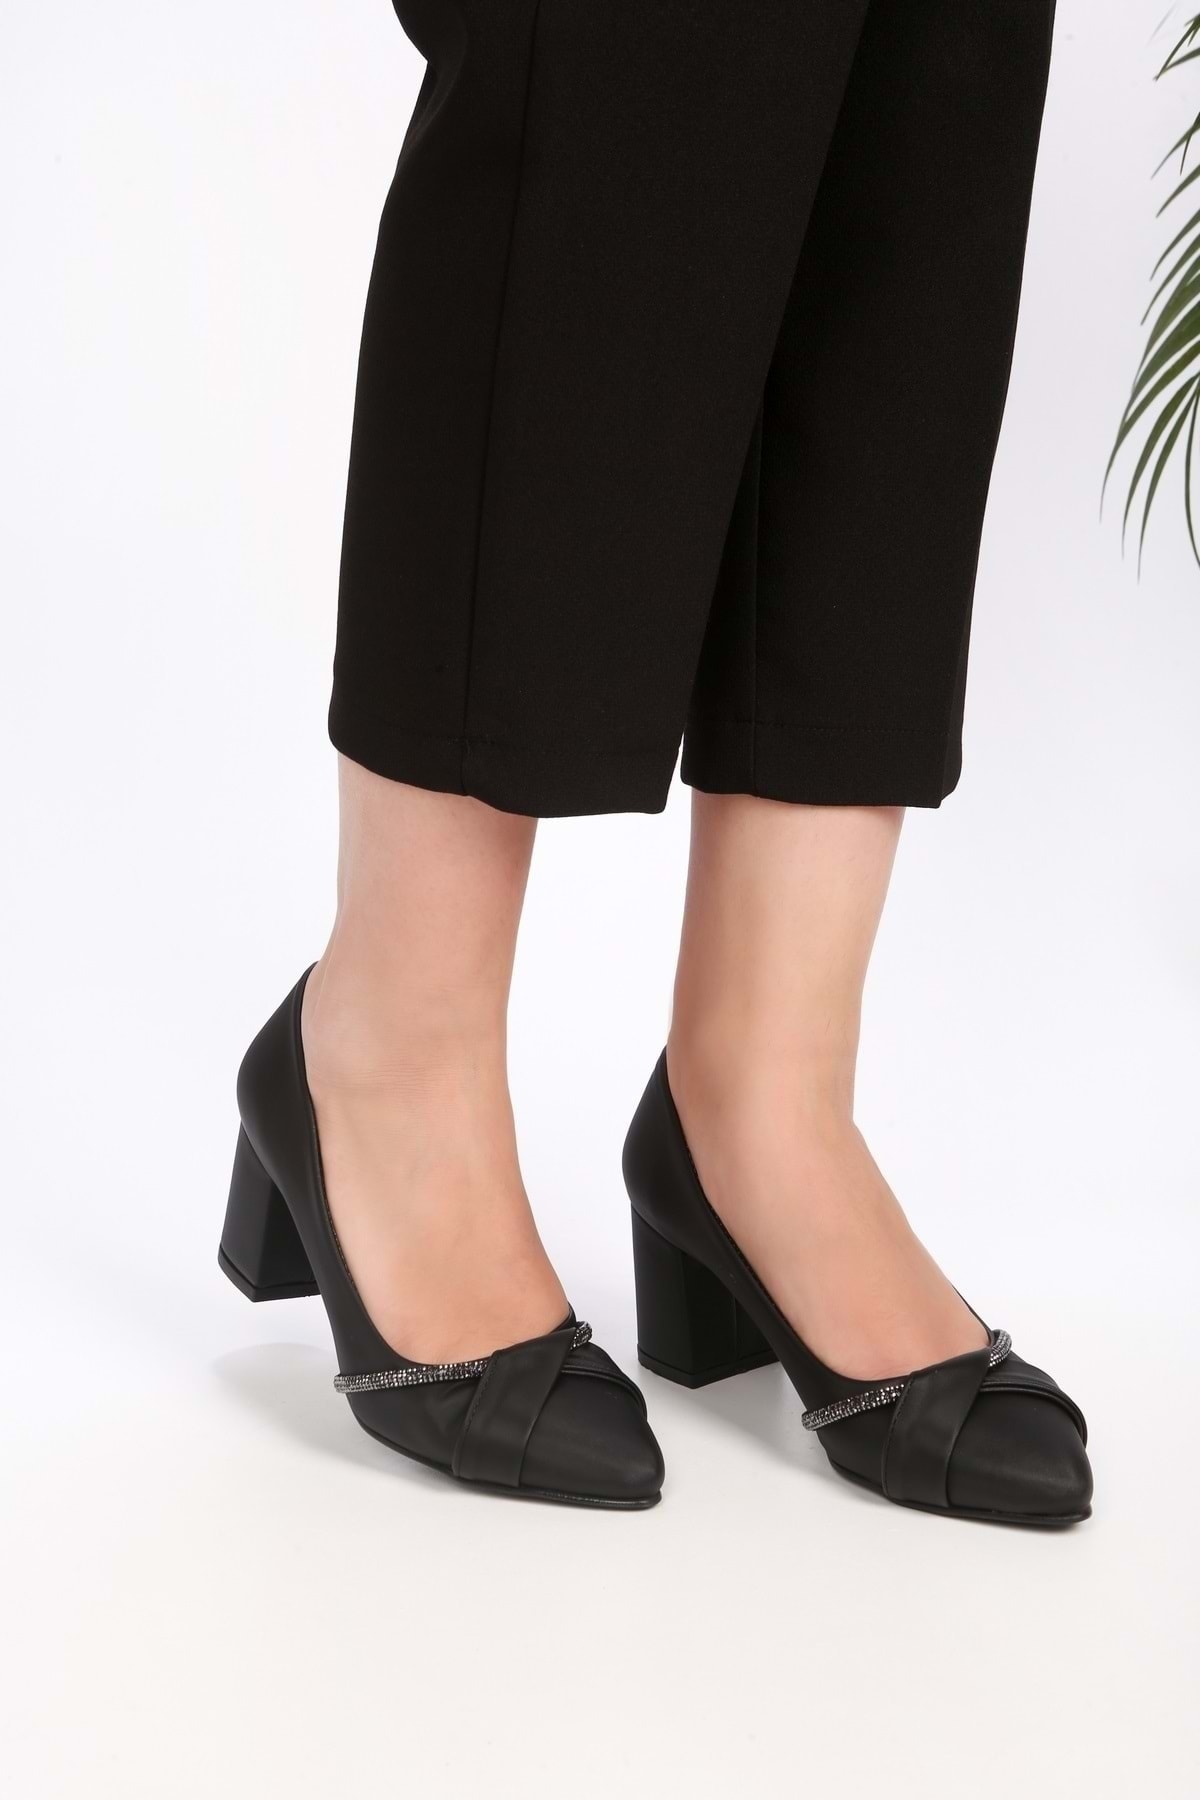 Levně Shoeberry Women's Cami Black Satin Stitched Heel Shoes.